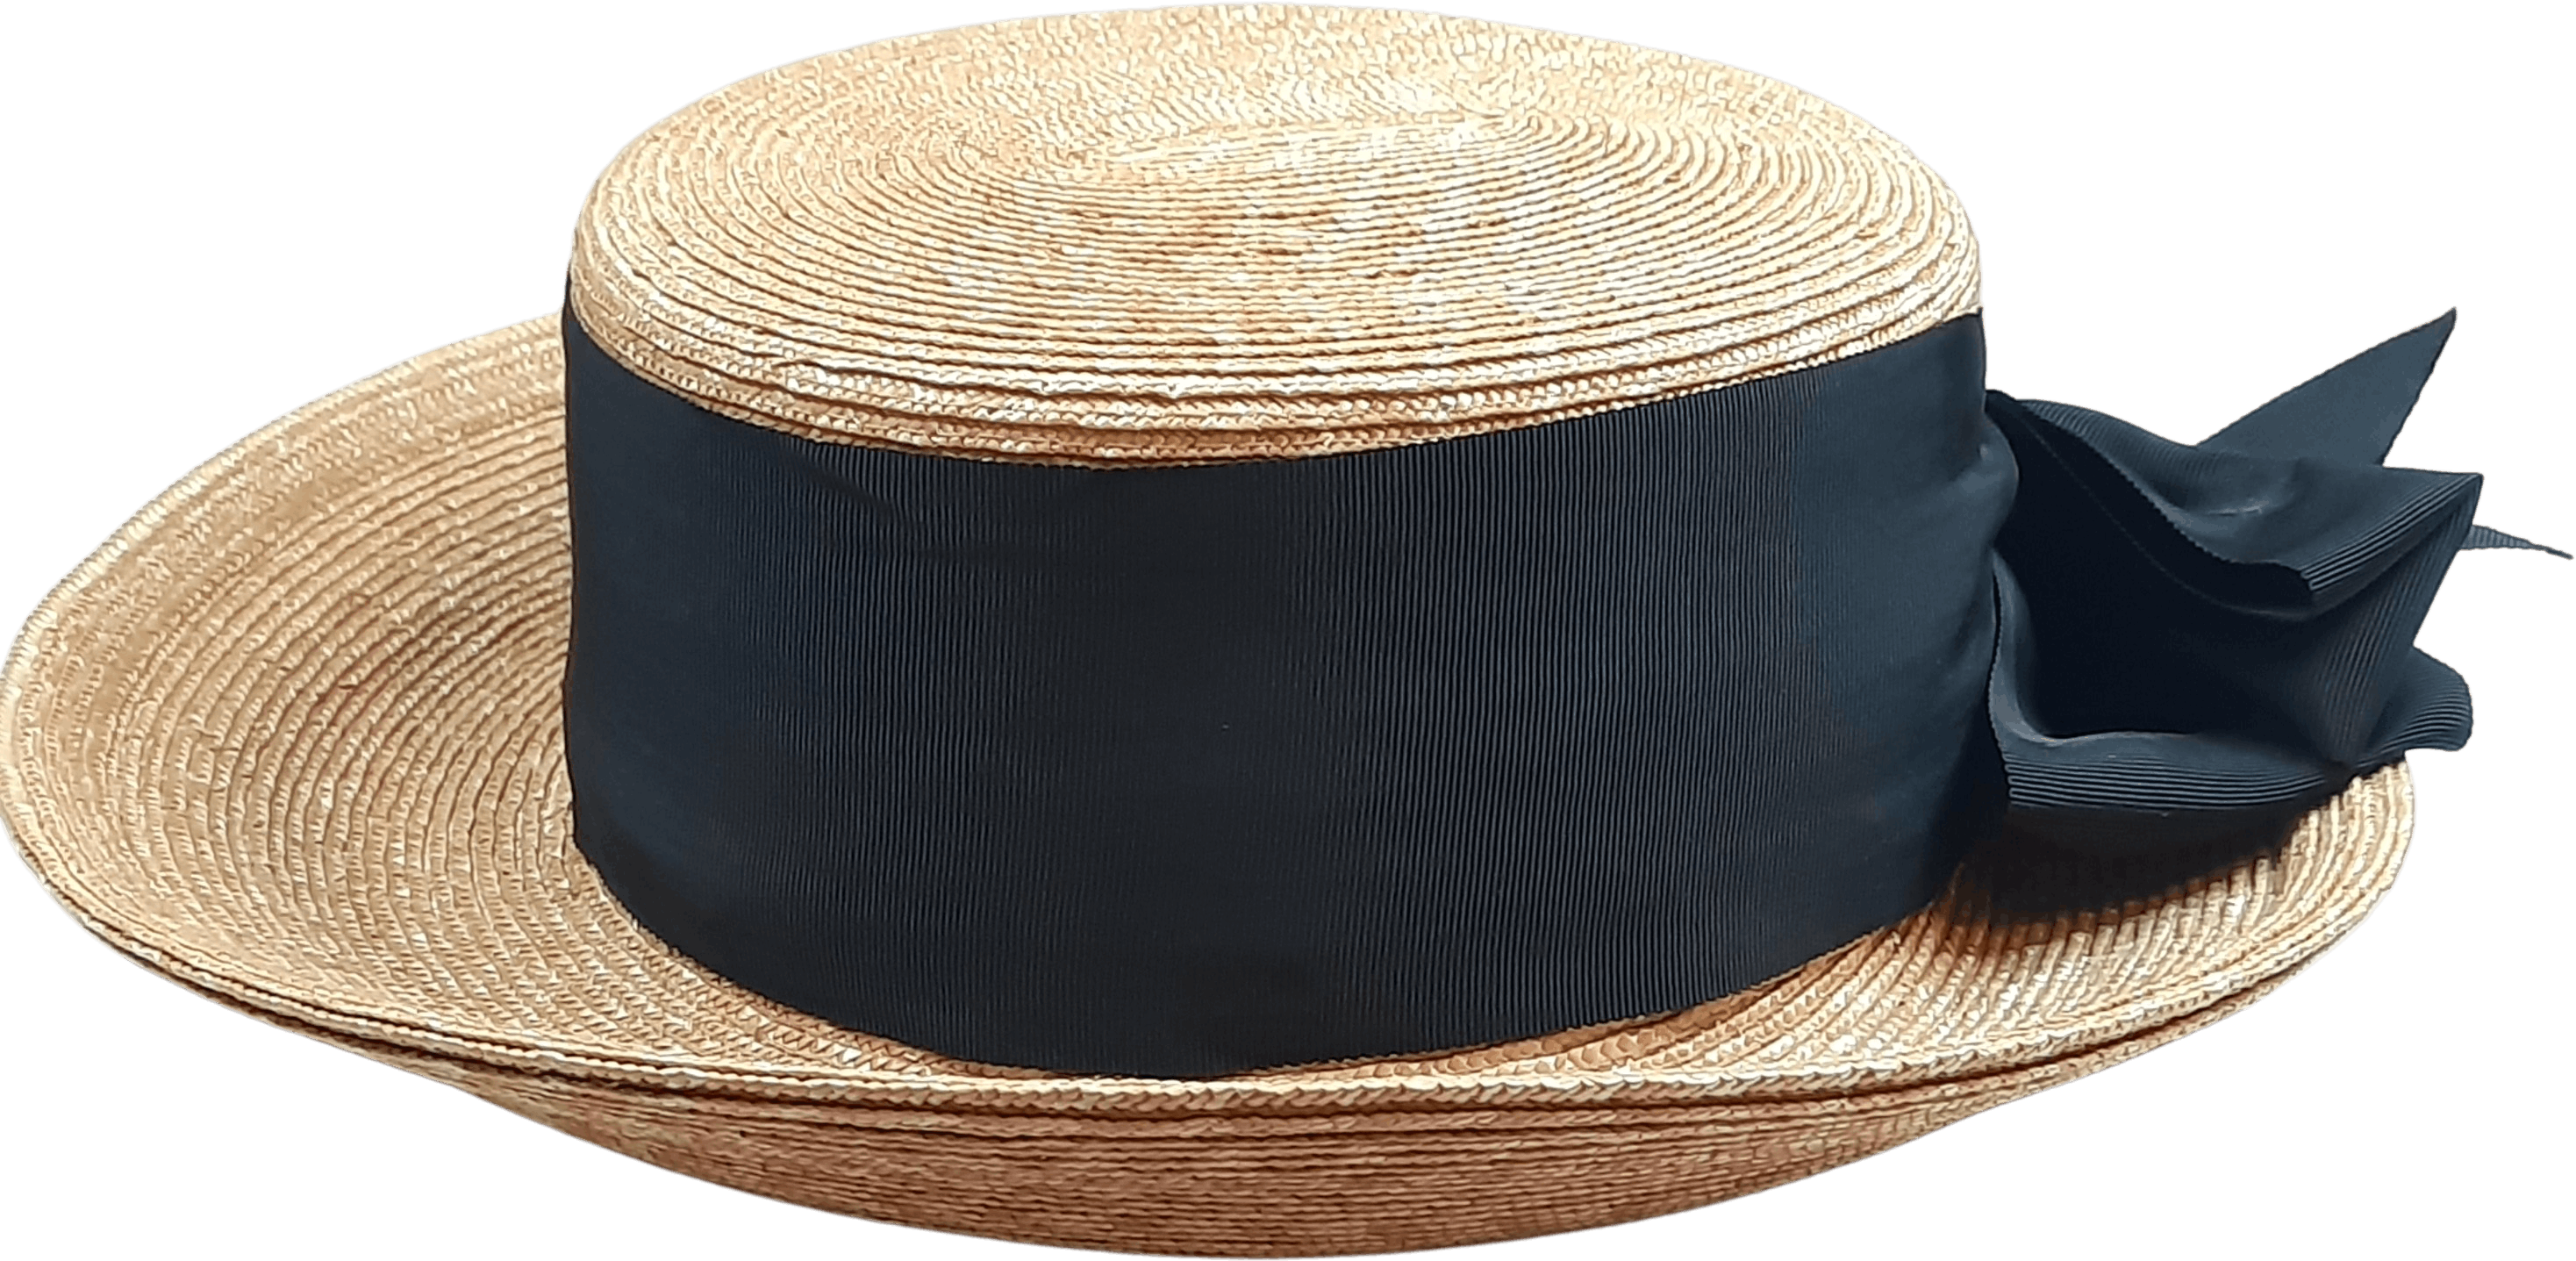 Vintage Straw Hat Transparent File